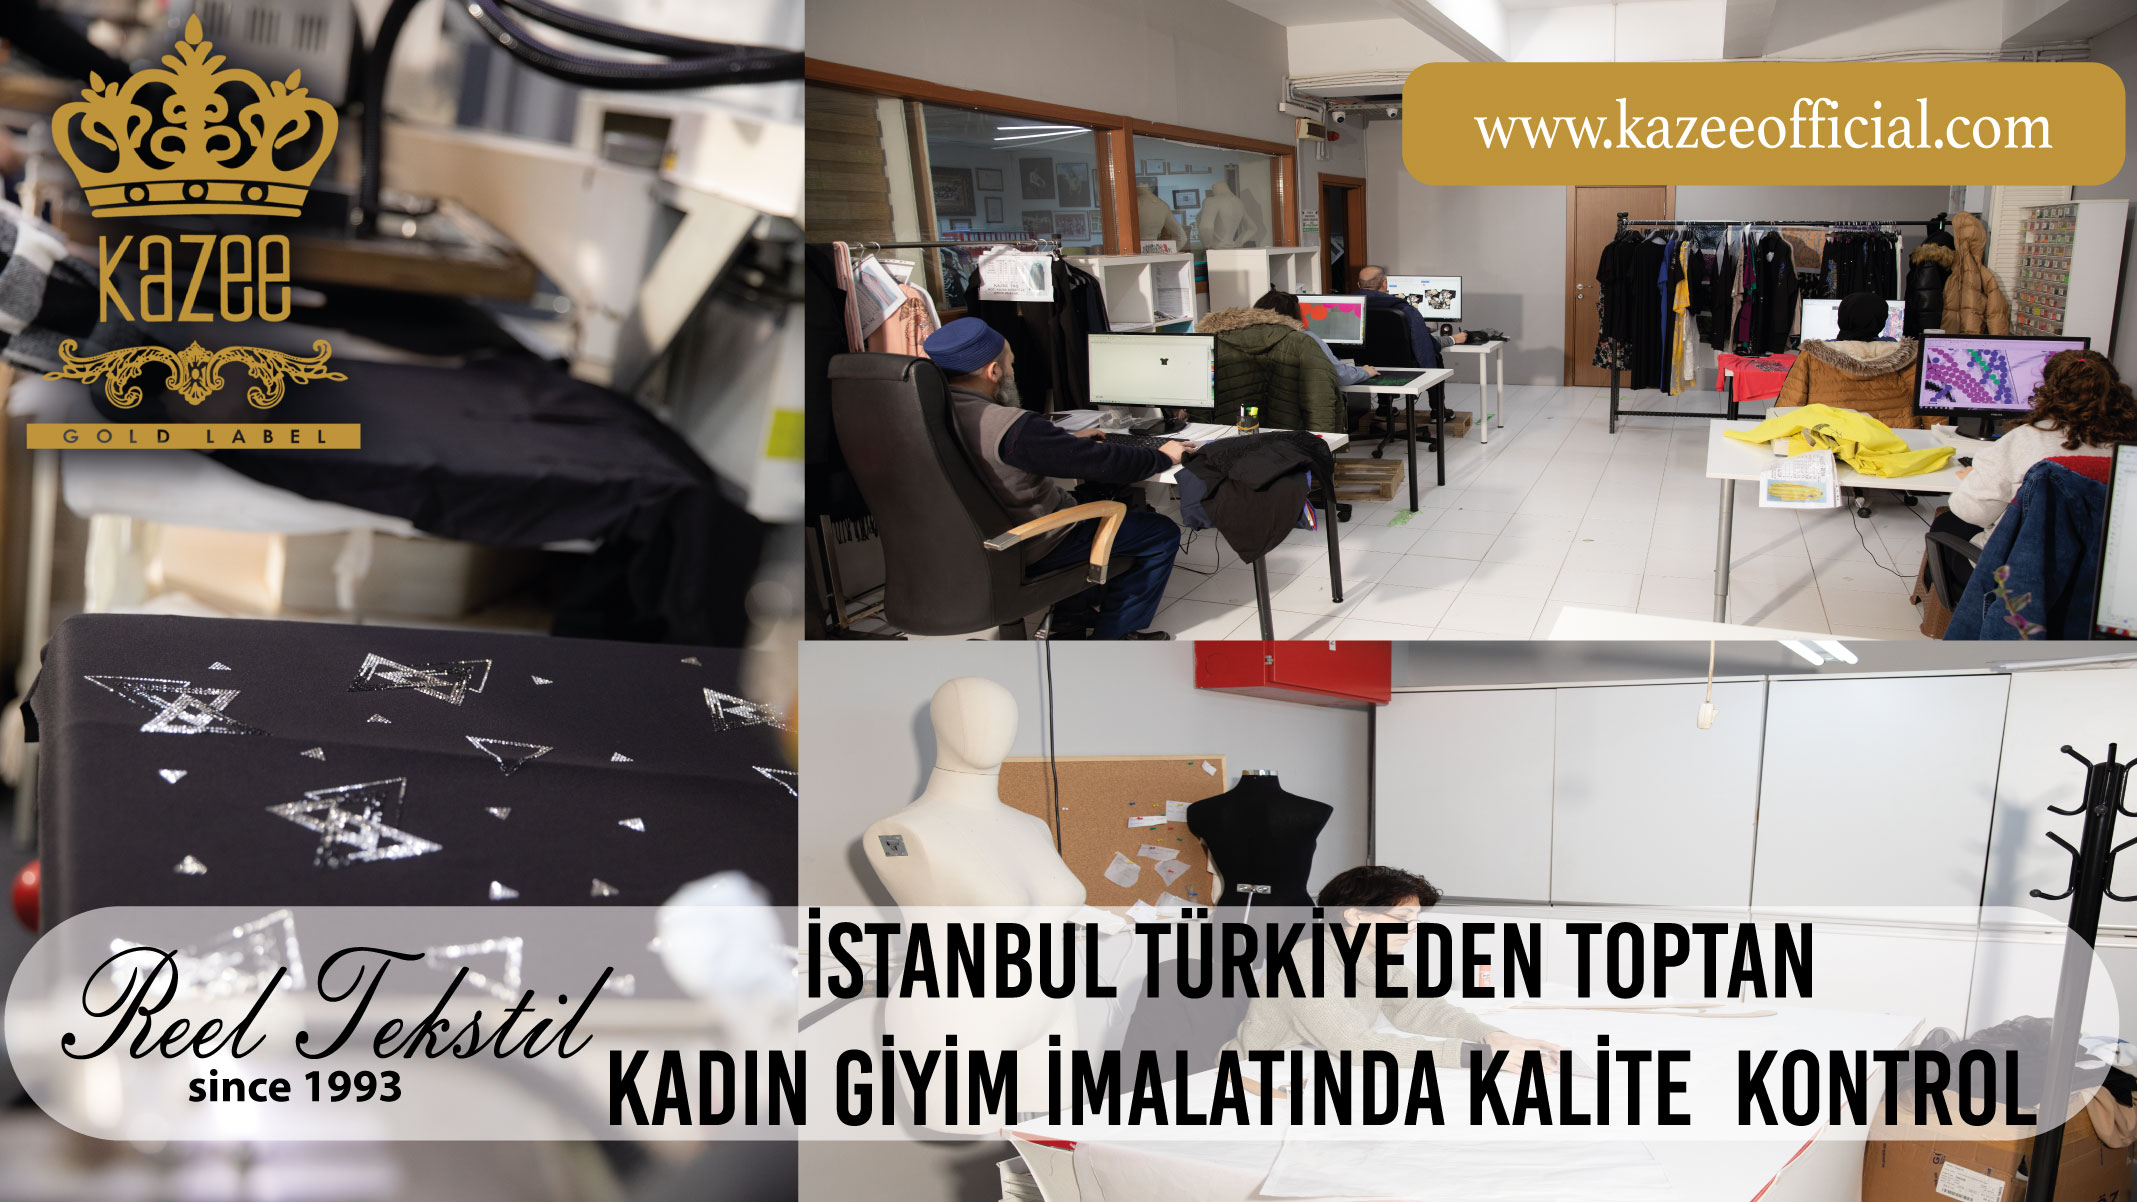 مراقبة الجودة في الملابس النسائية بالجملة من اسطنبول تركيا